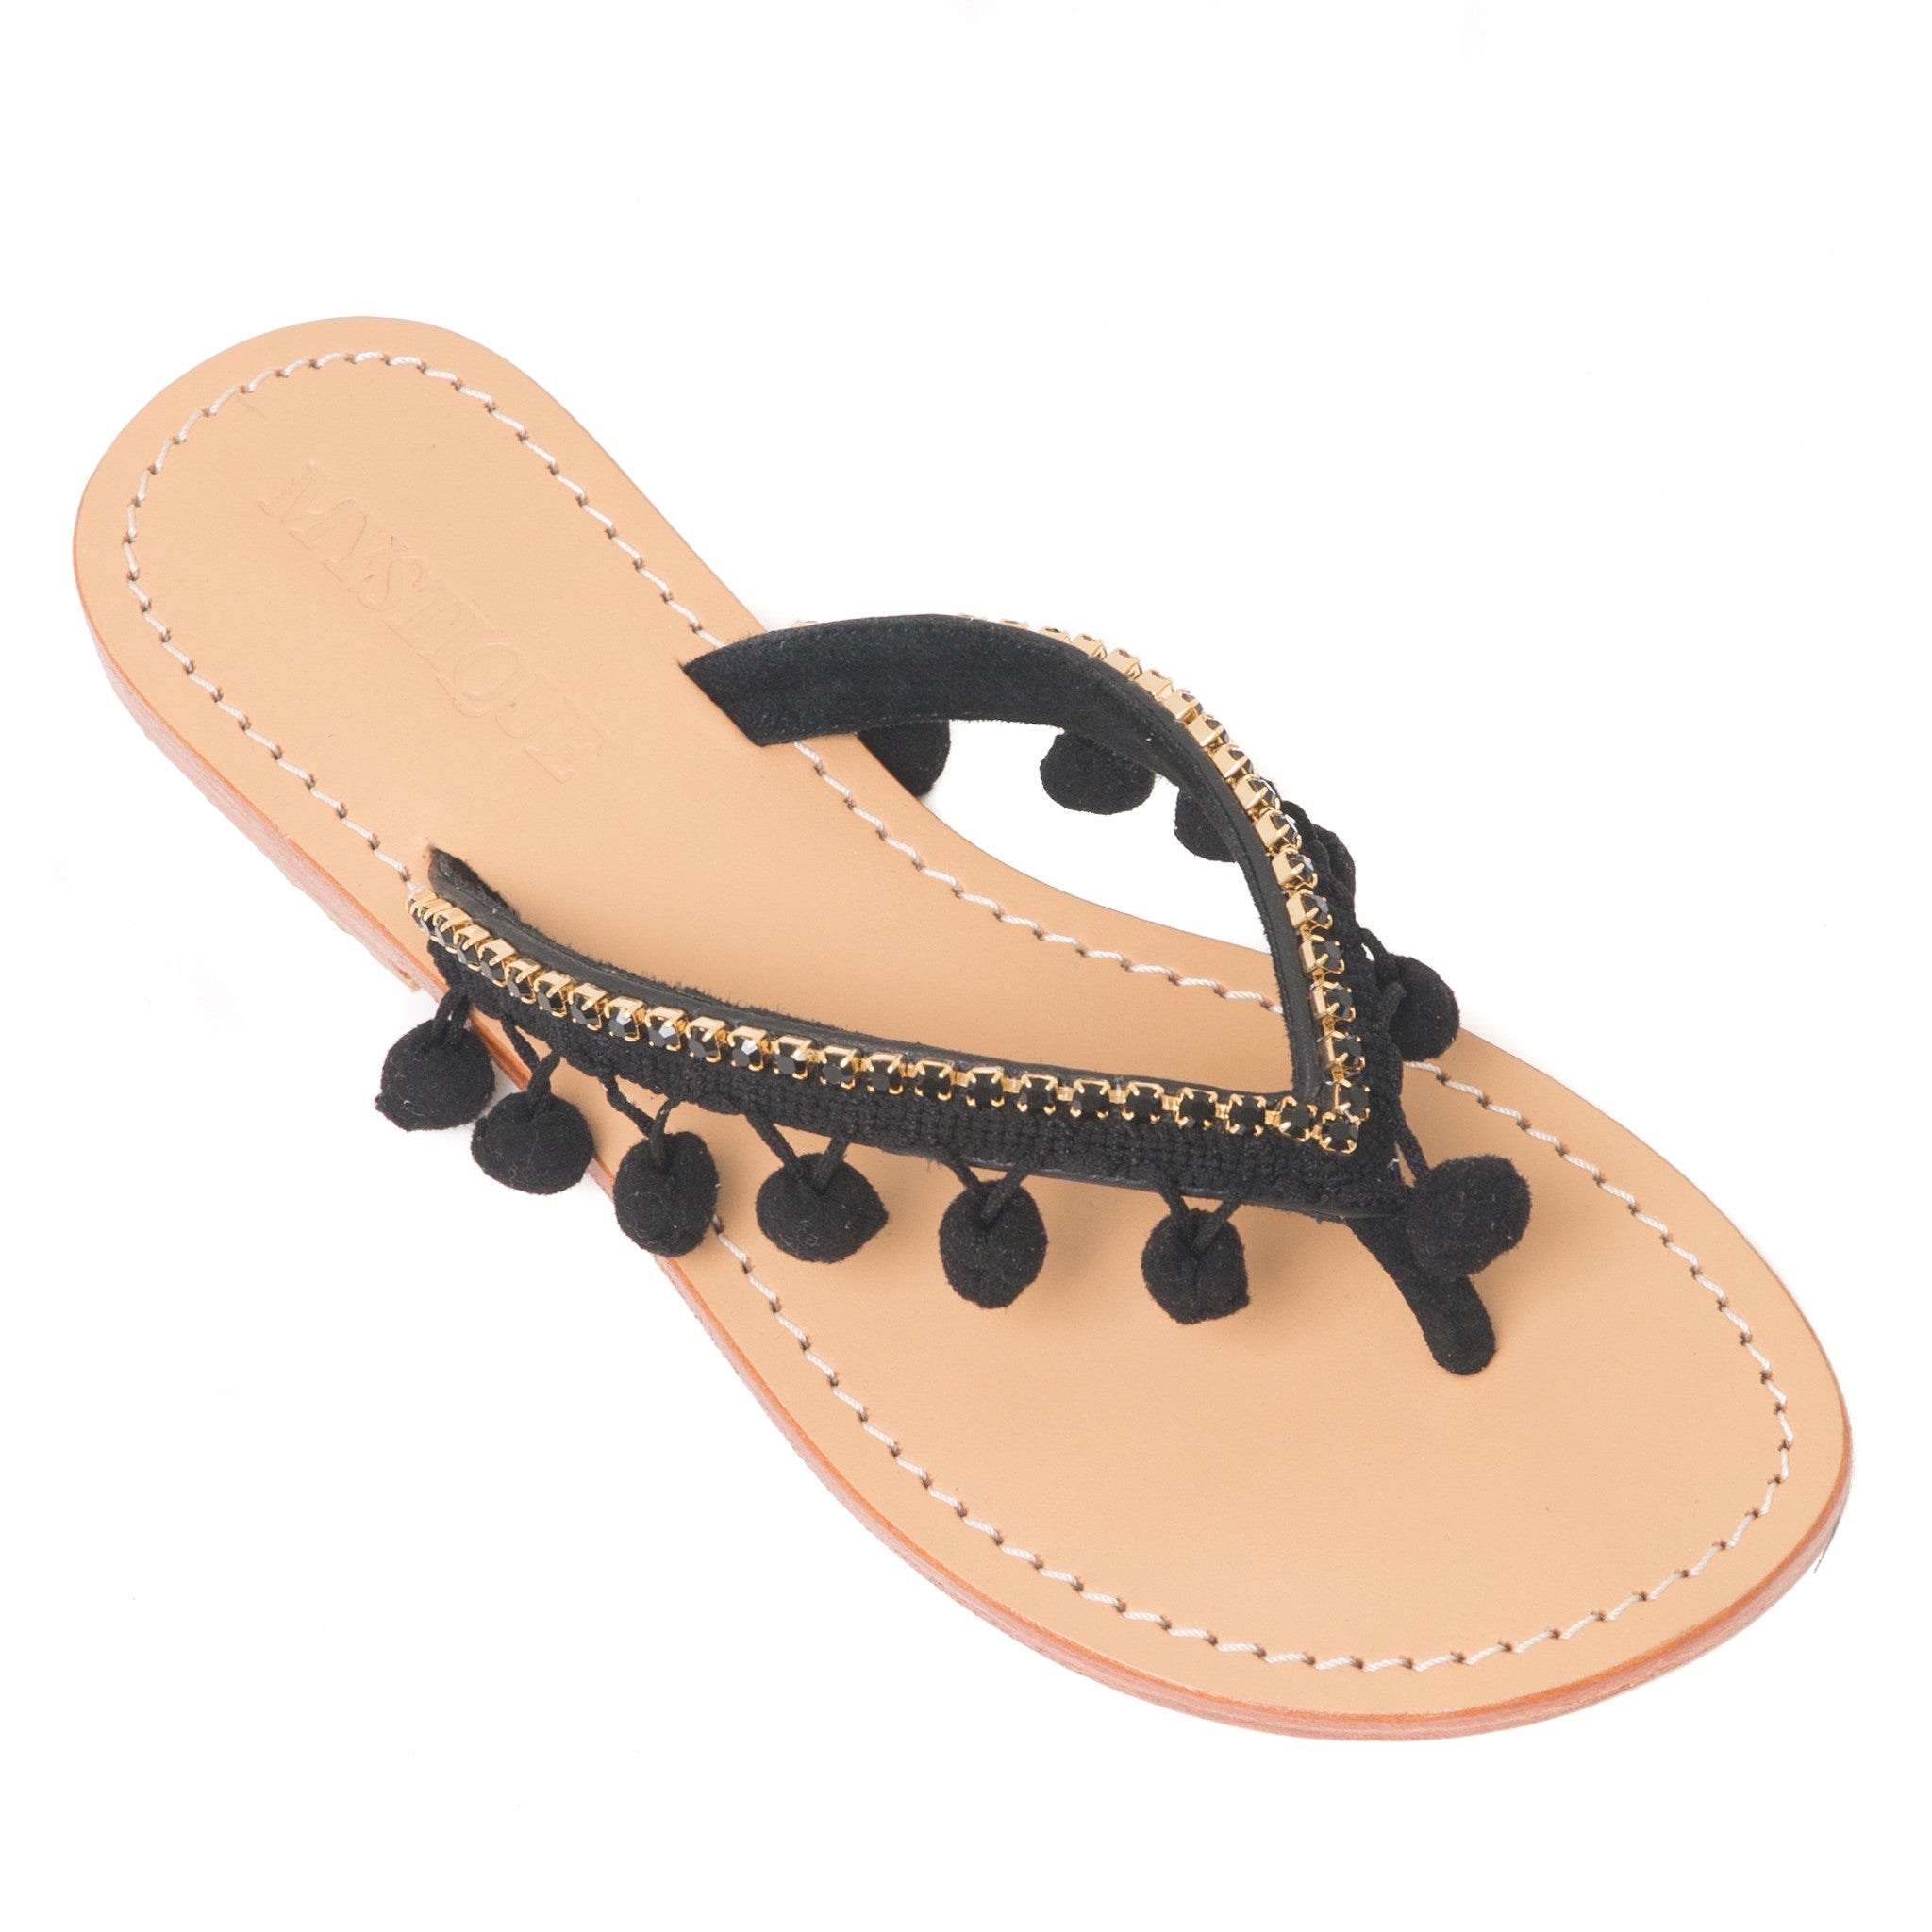 Trendy Leather Women's Sandals | Mystique Sandals